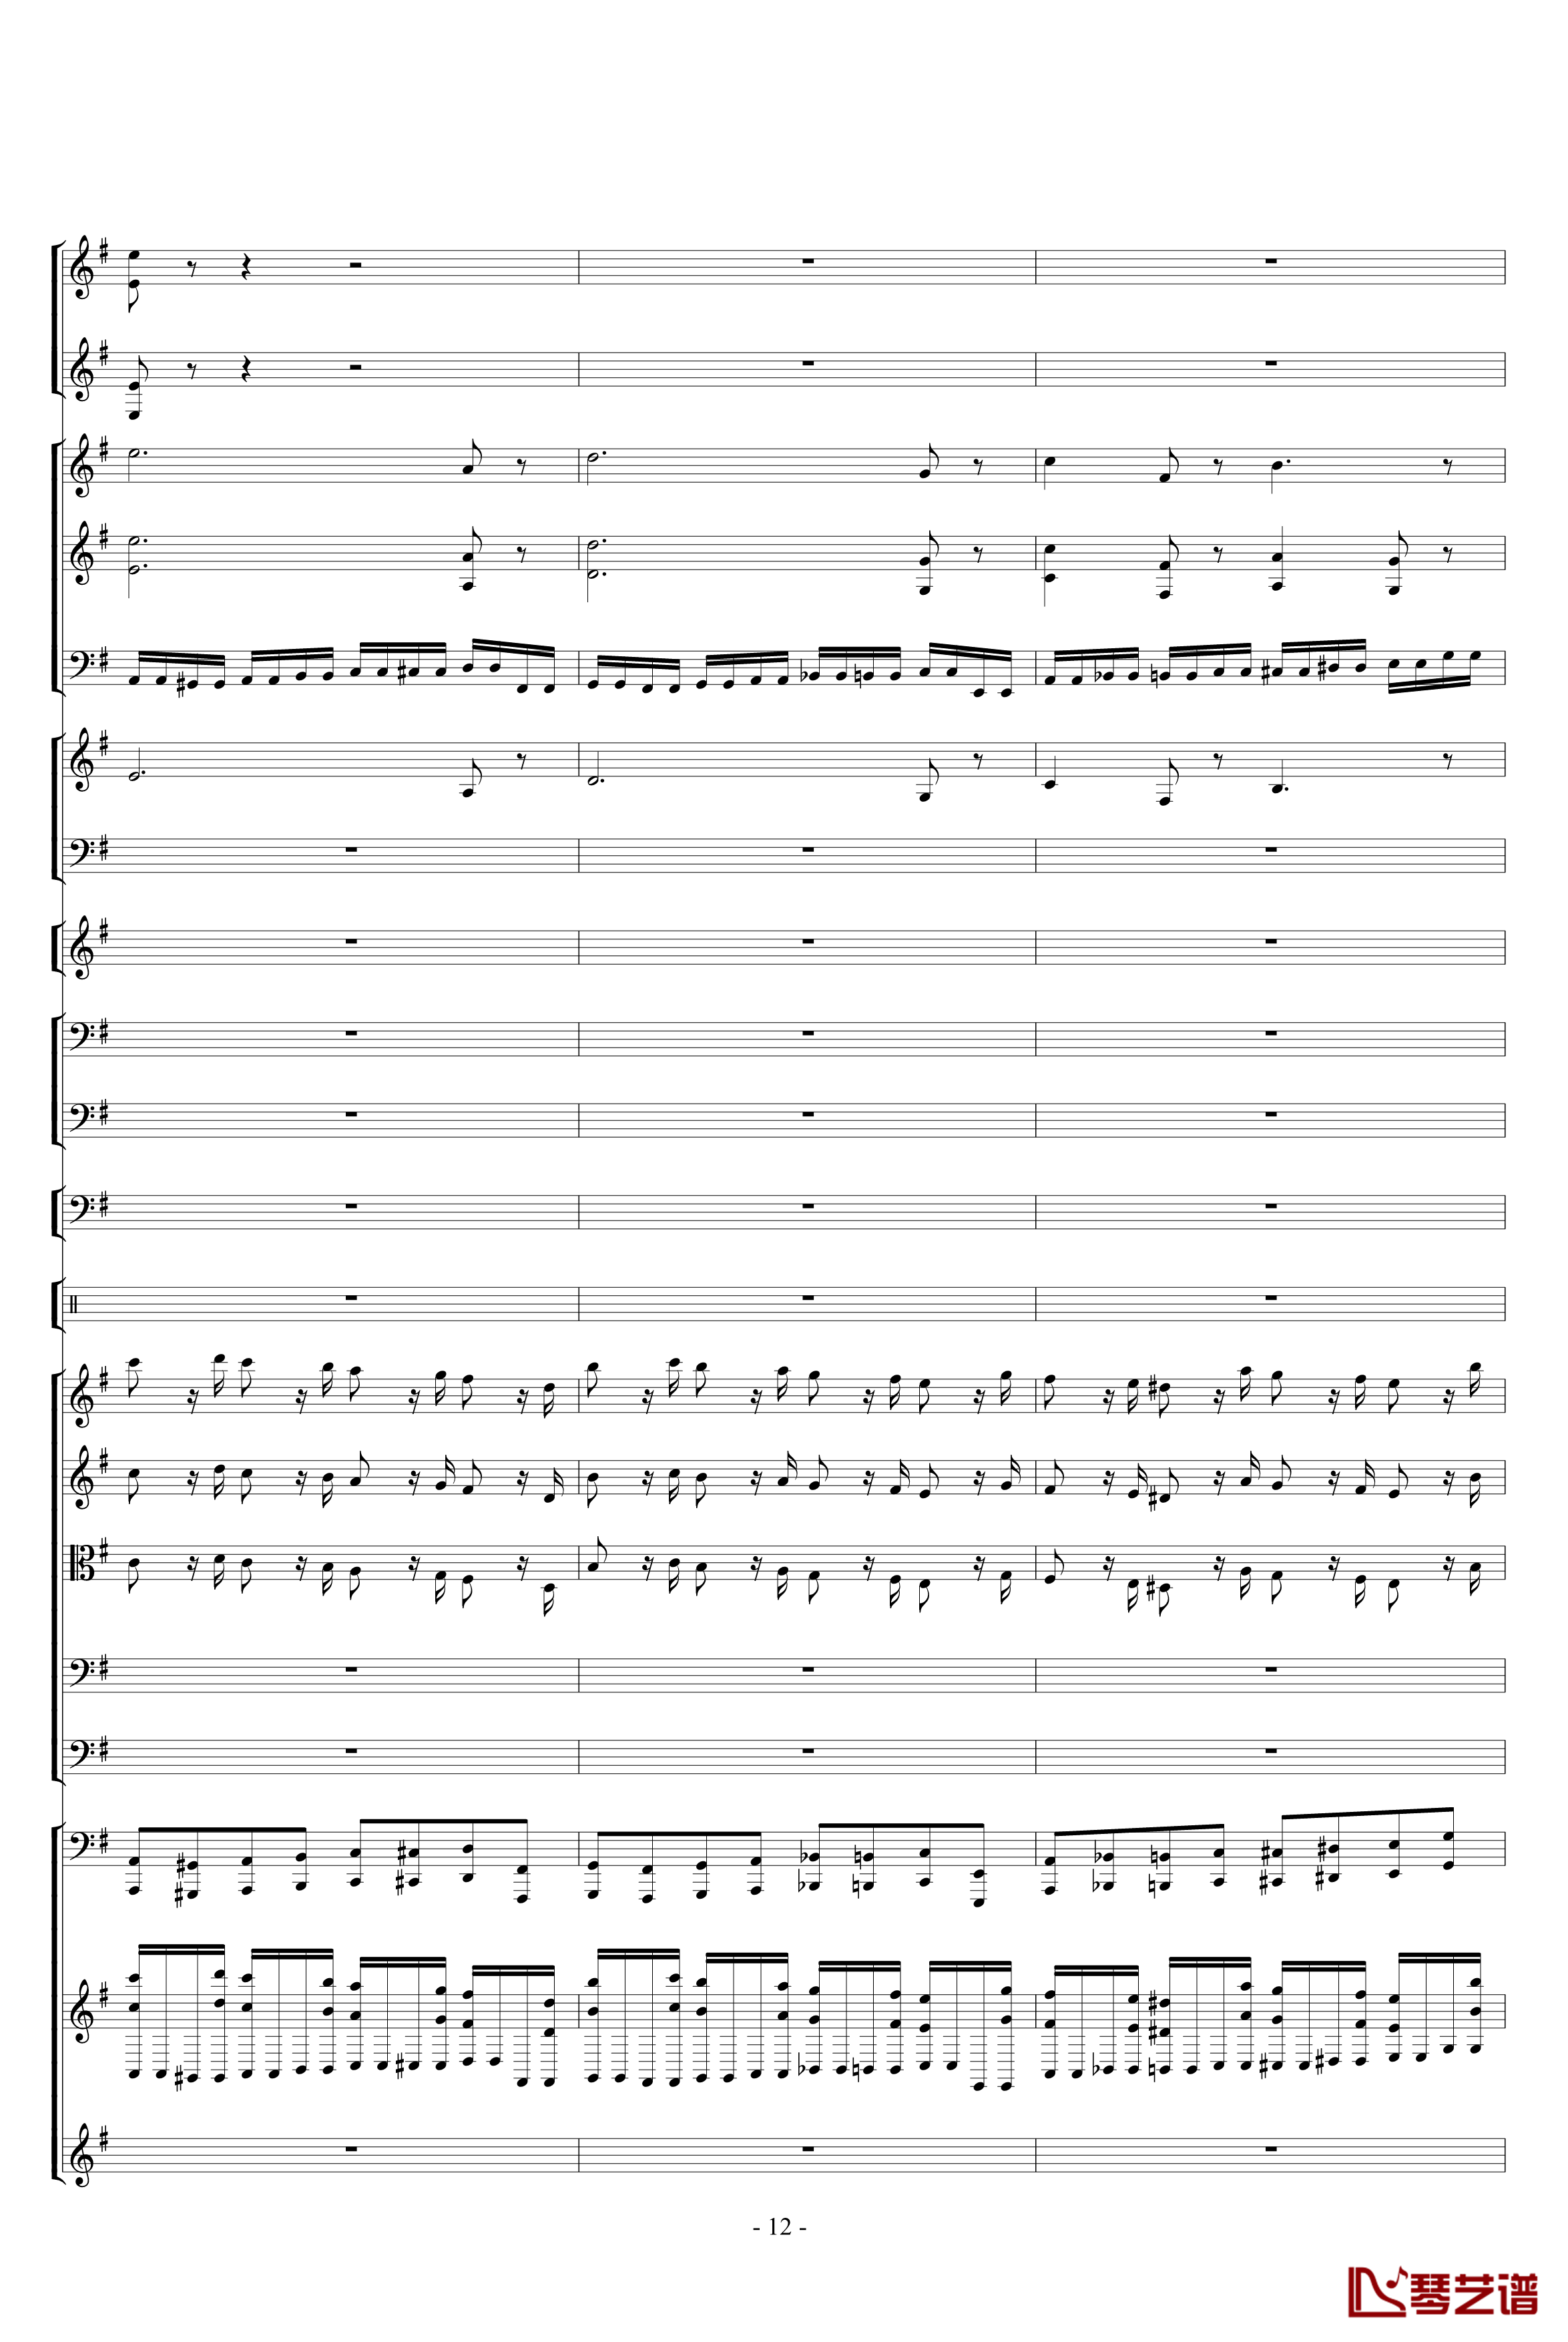 胡桃夹子组曲之进行曲钢琴谱-柴科夫斯基-Peter Ilyich Tchaikovsky12